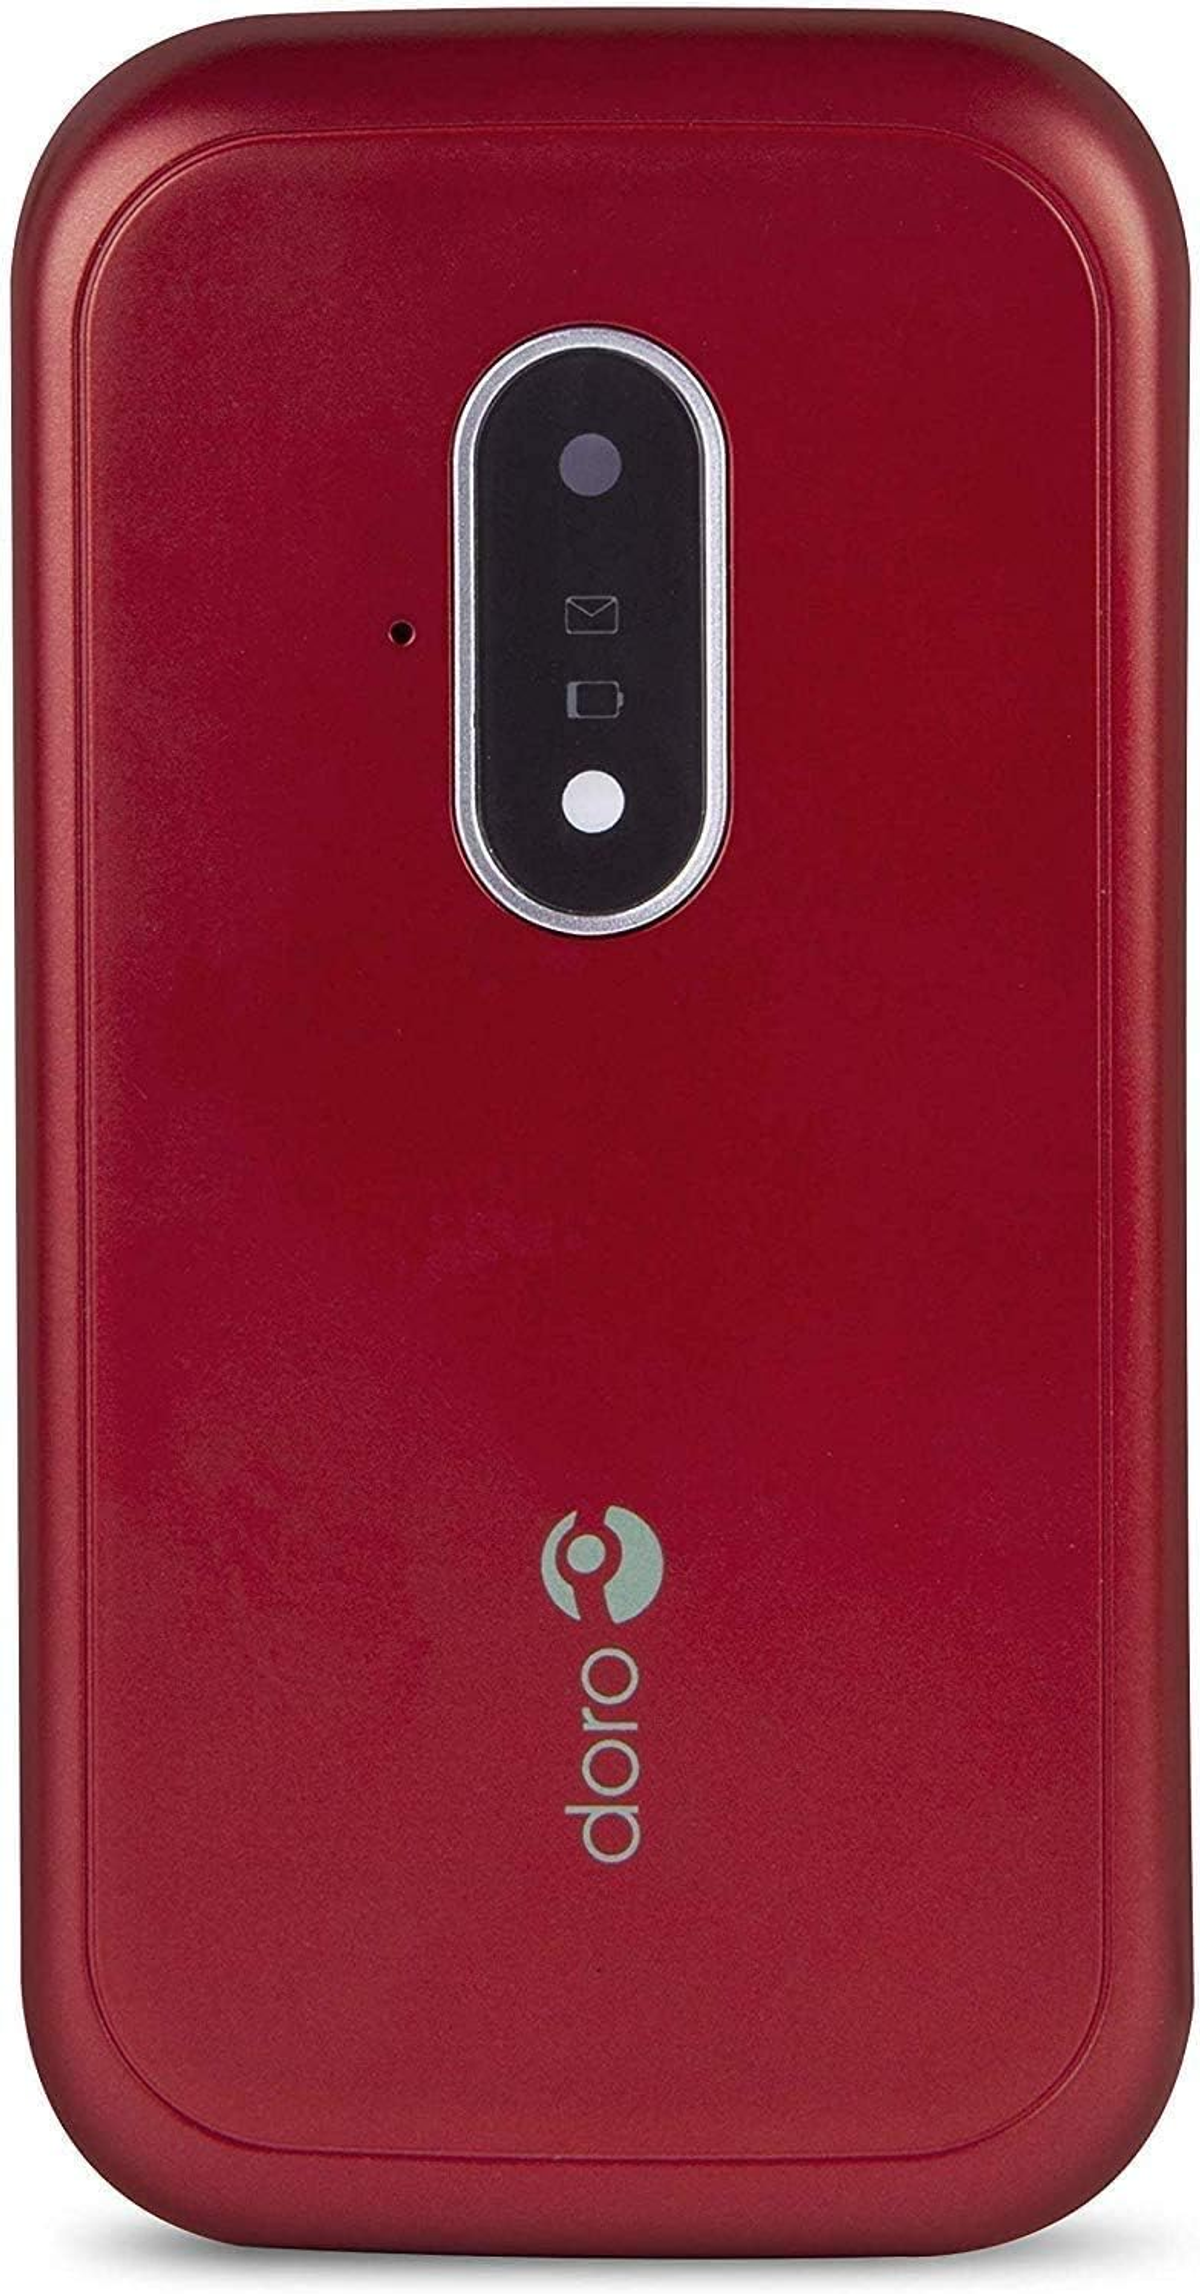 DORO 7030 ROT-WEISS Rot/Weiss Mobiltelefon,